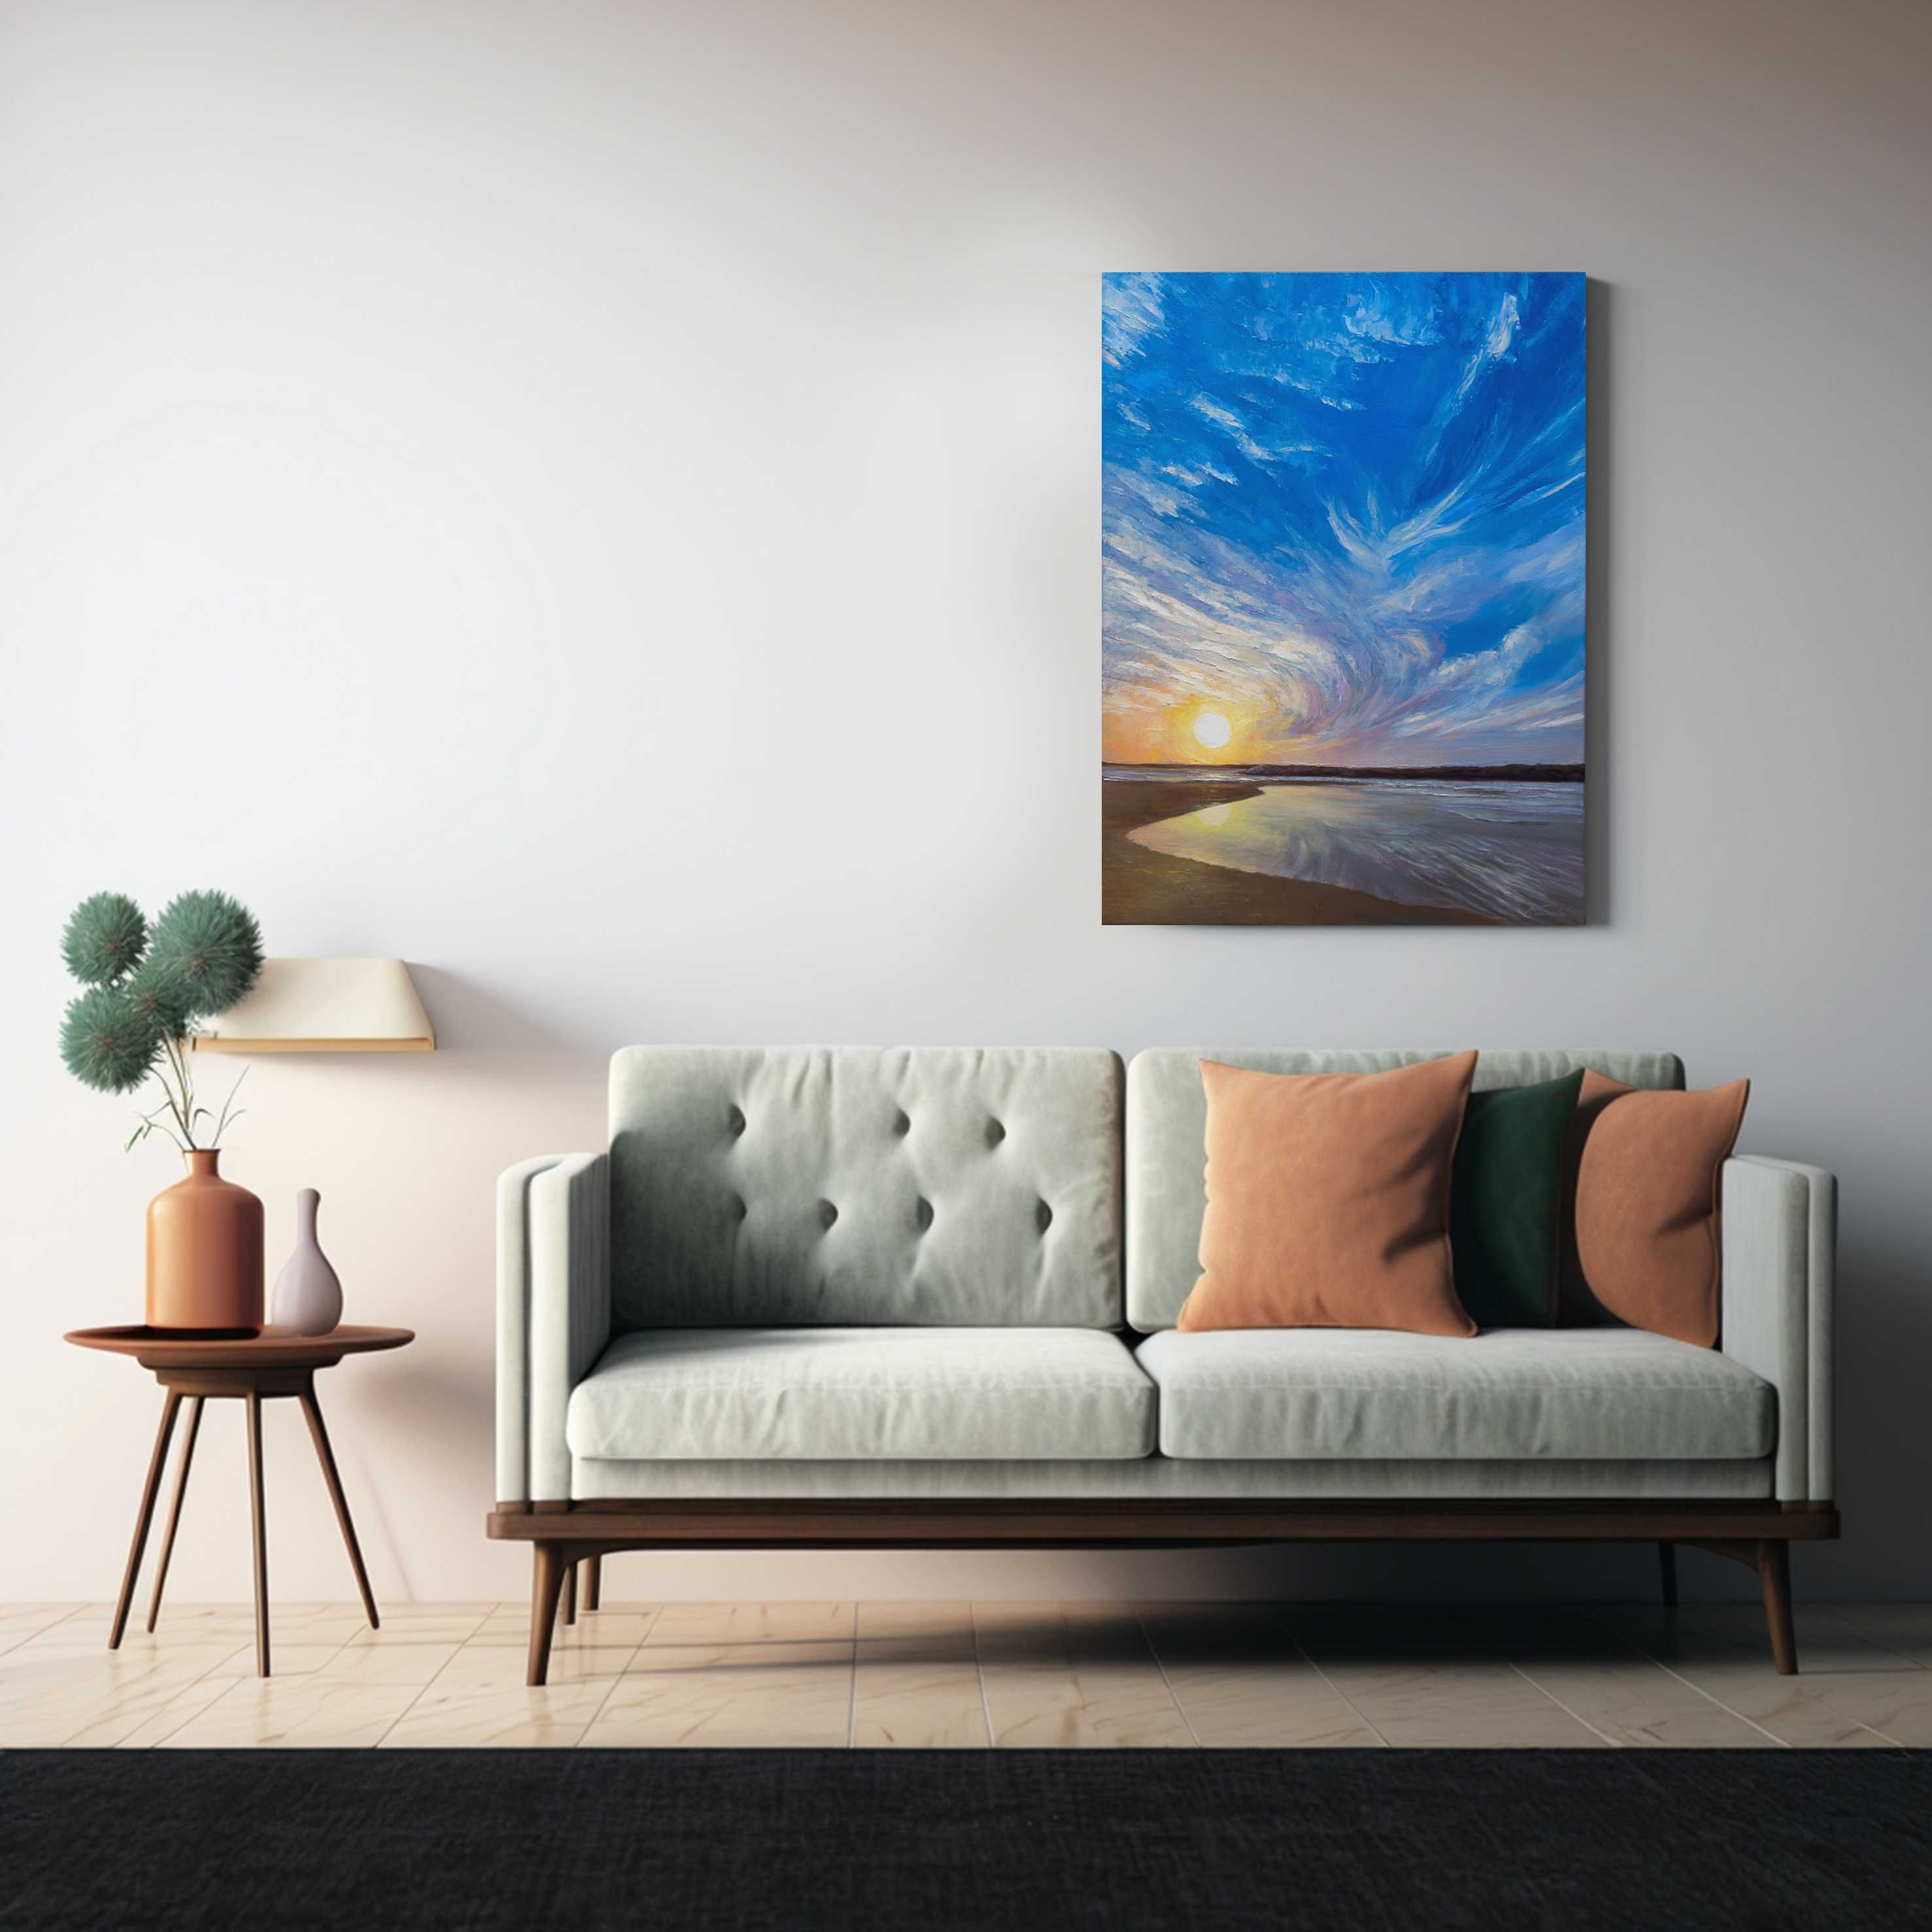 Картина "Світанок, море" олійні фарби, полотно 45х60 см